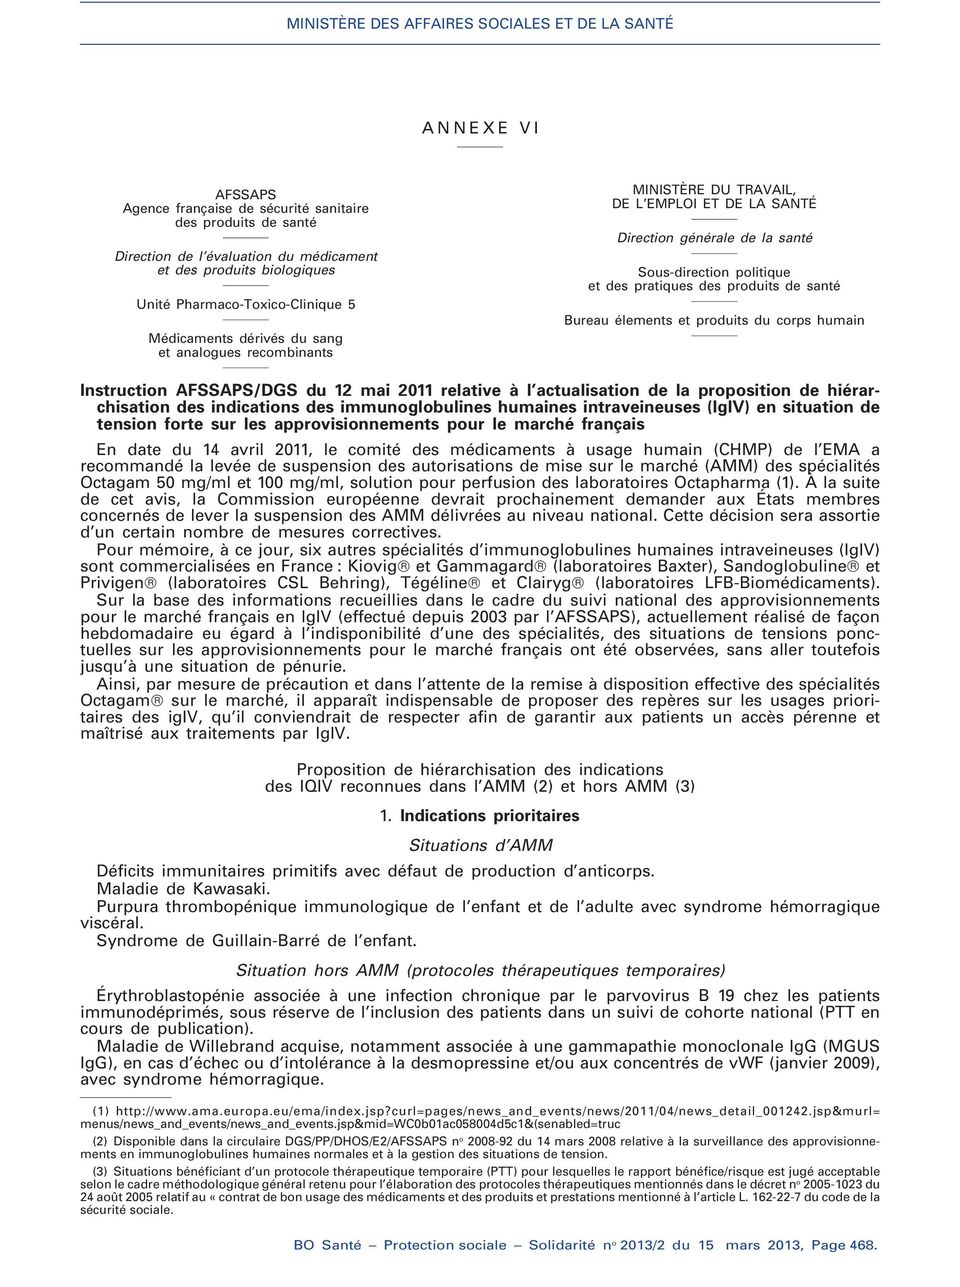 produits du corps humain Instruction AFSSAPS/DGS du 12 mai 2011 relative à l actualisation de la proposition de hiérarchisation des indications des immunoglobulines humaines intraveineuses (lglv) en